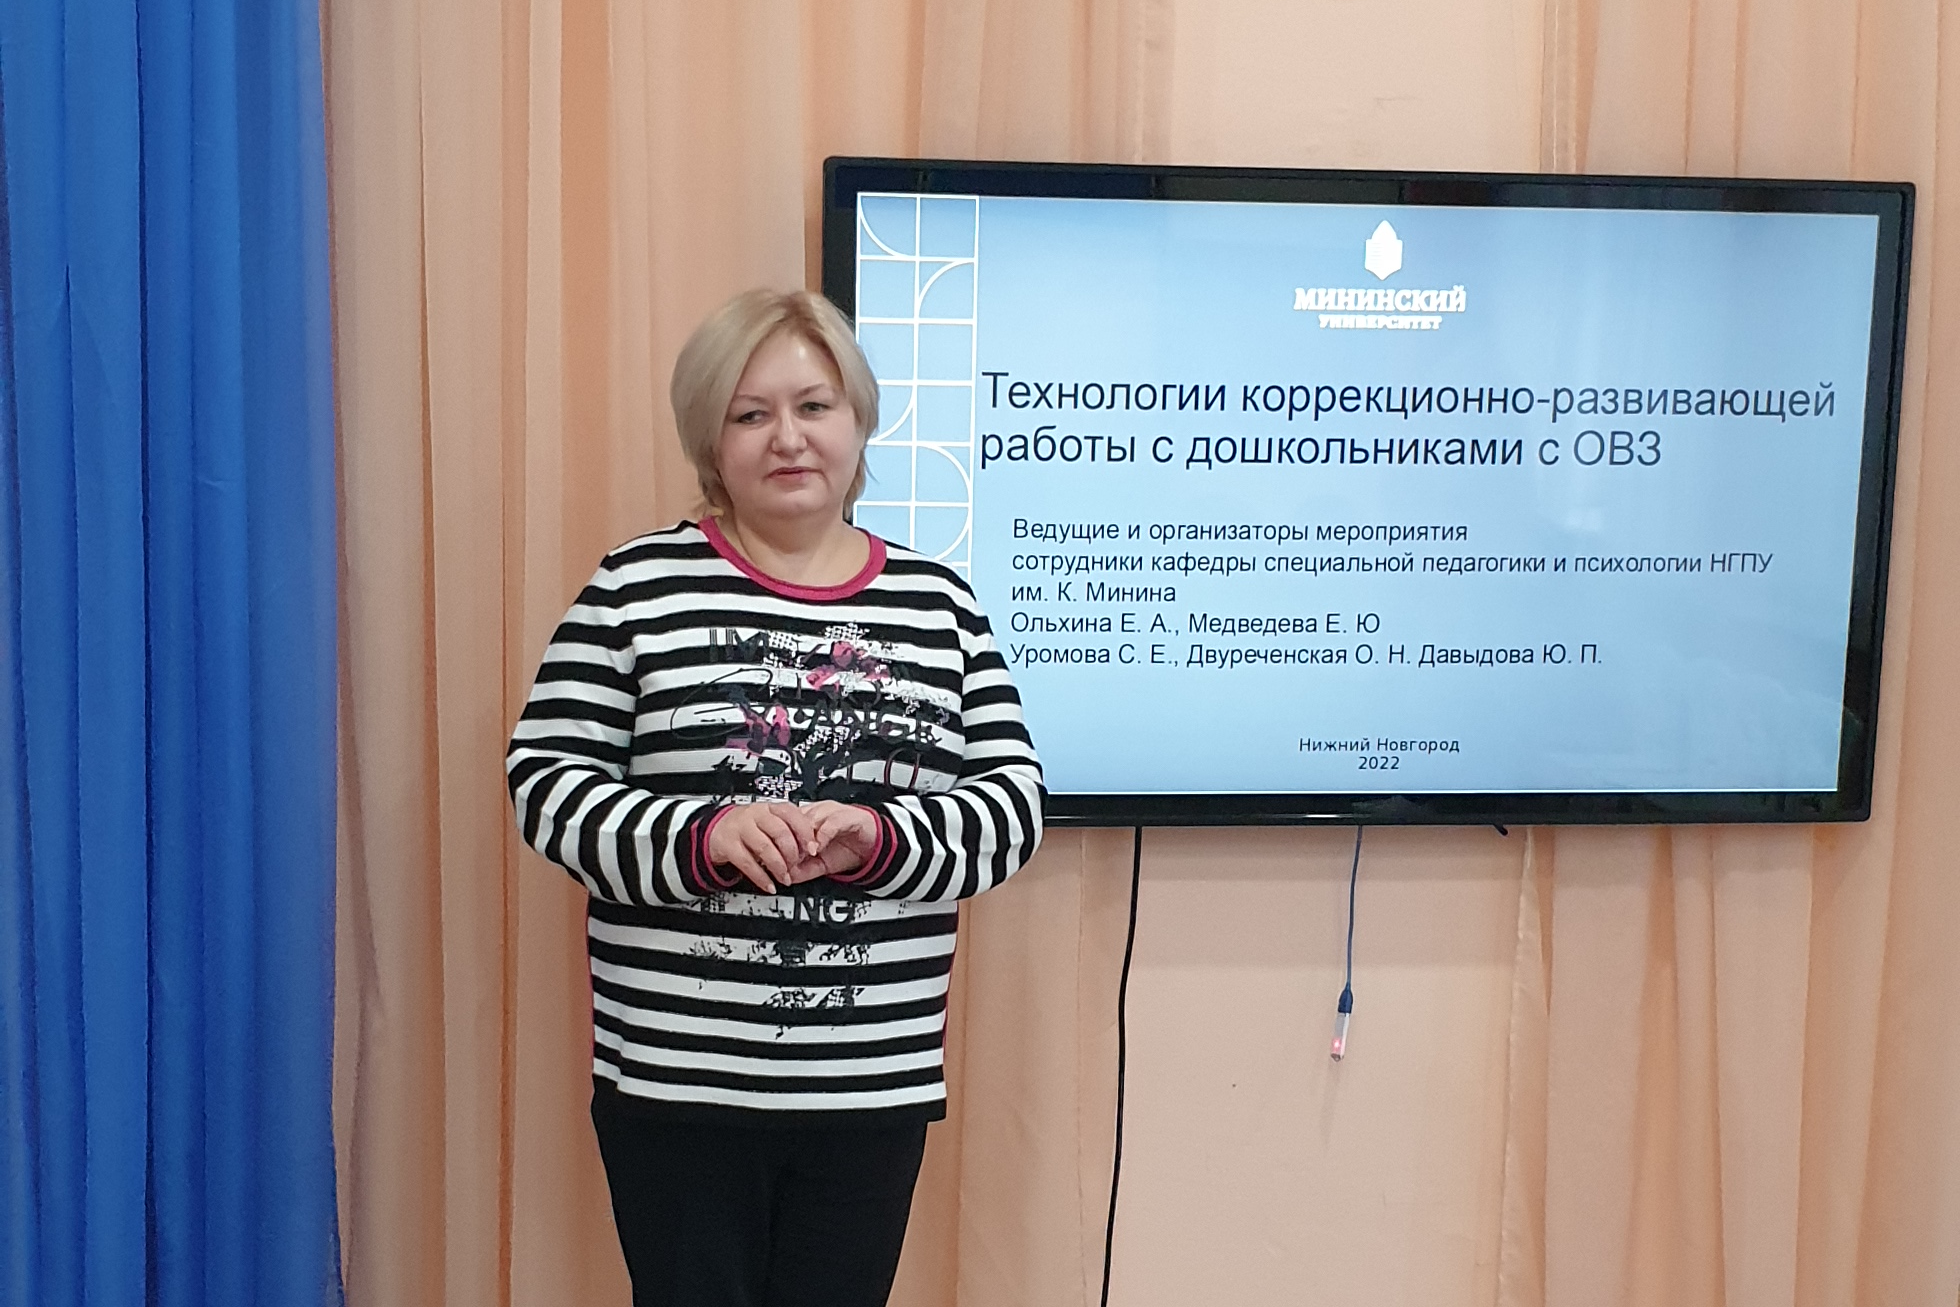 Коррекционно-развивающие технологии для дошкольников с ОВЗ представили эксперты Мининского